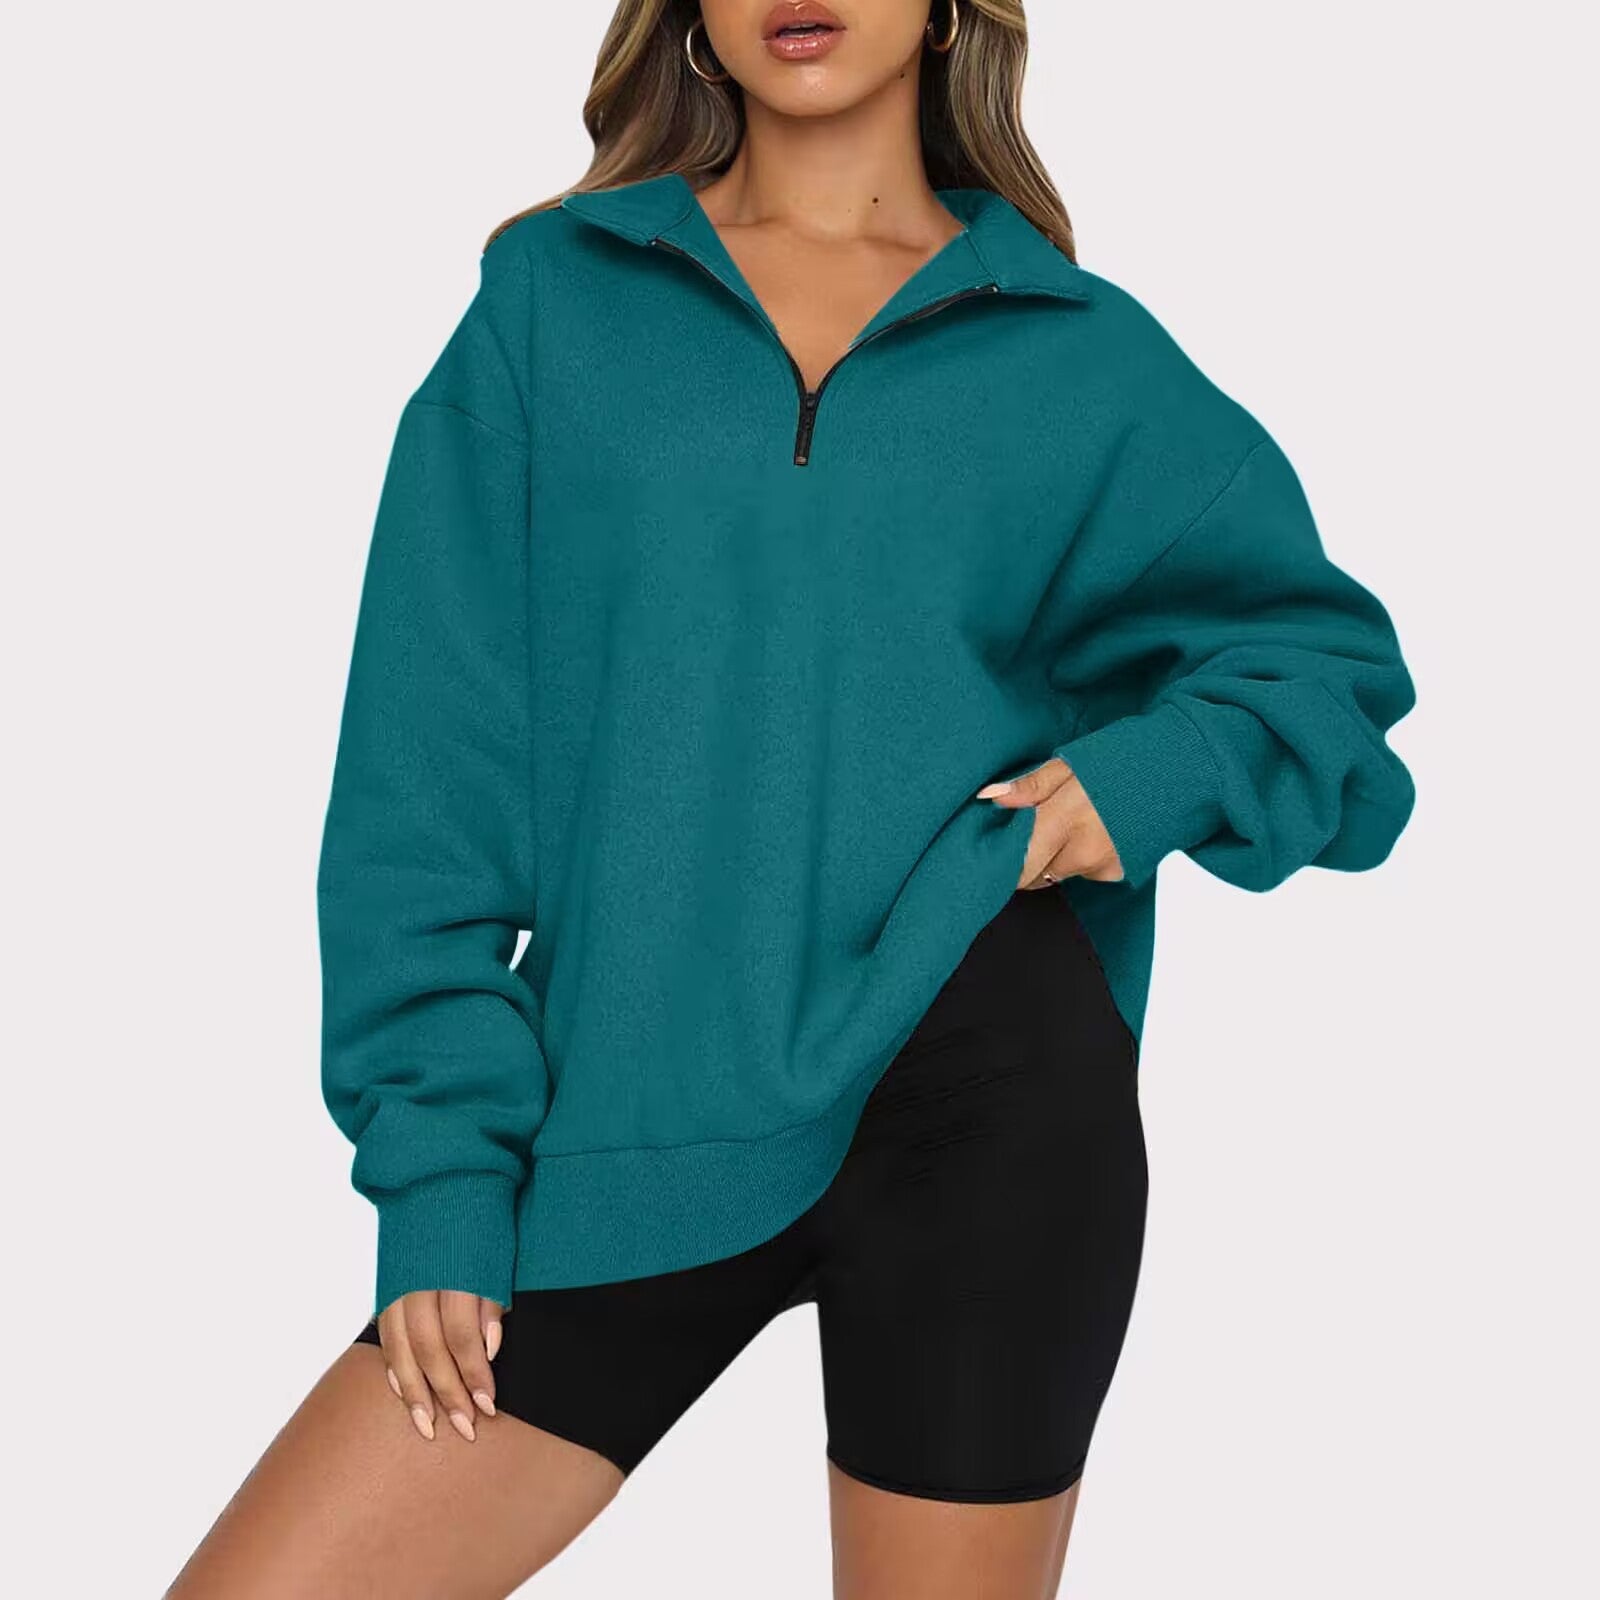 Women's Relaxed-fit Sweatshirt